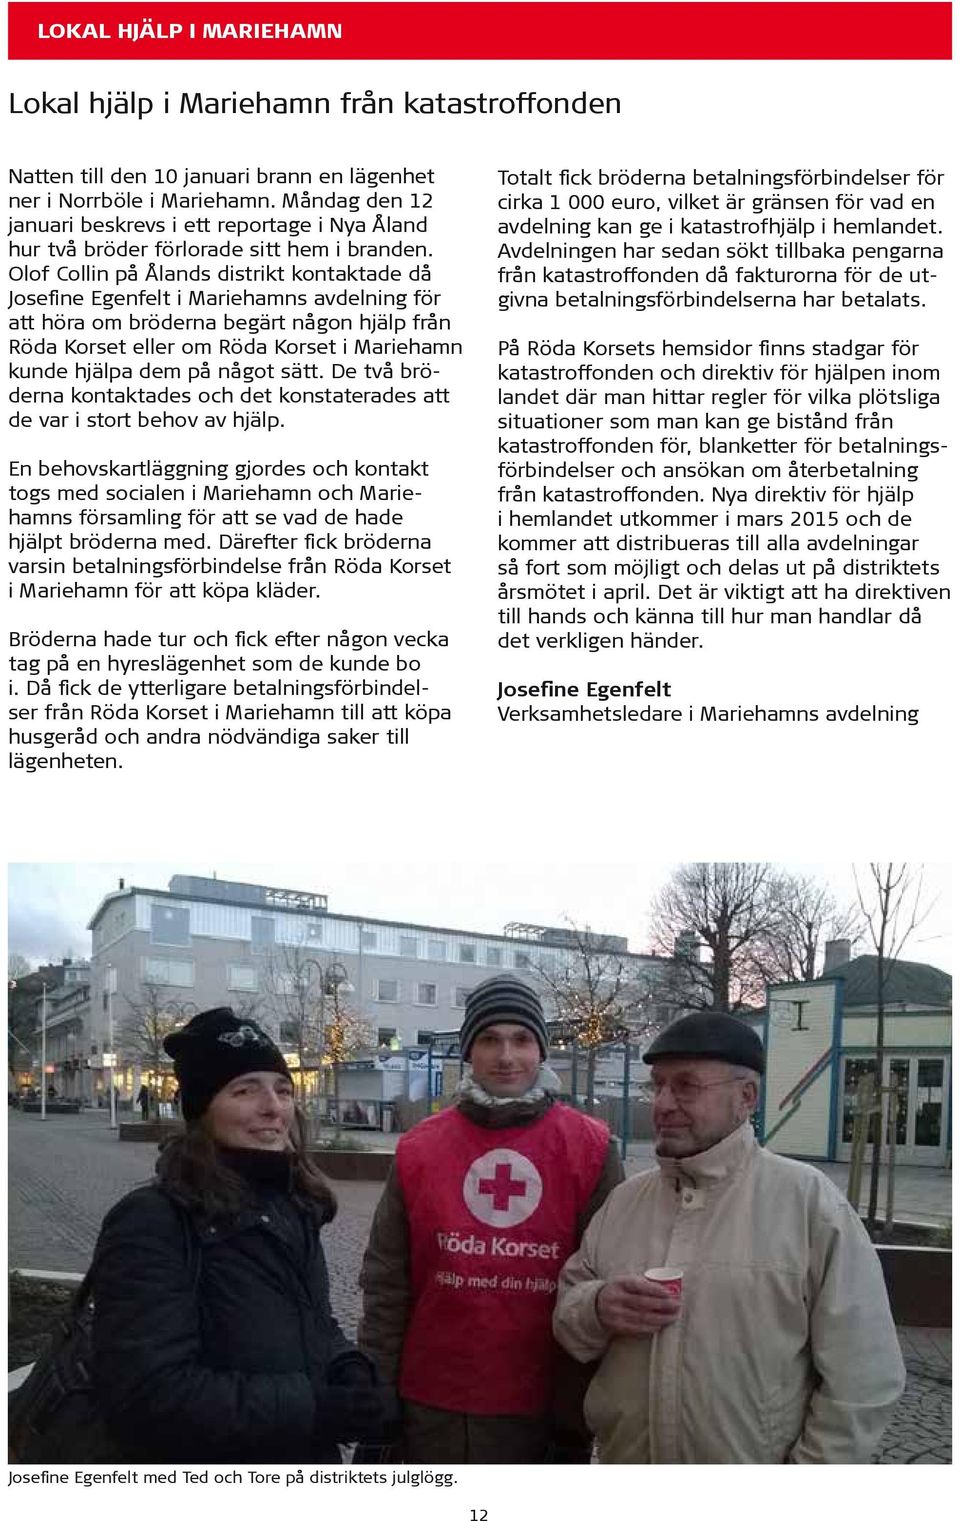 Olof Collin på Ålands distrikt kontaktade då Josefine Egenfelt i Mariehamns avdelning för att höra om bröderna begärt någon hjälp från Röda Korset eller om Röda Korset i Mariehamn kunde hjälpa dem på